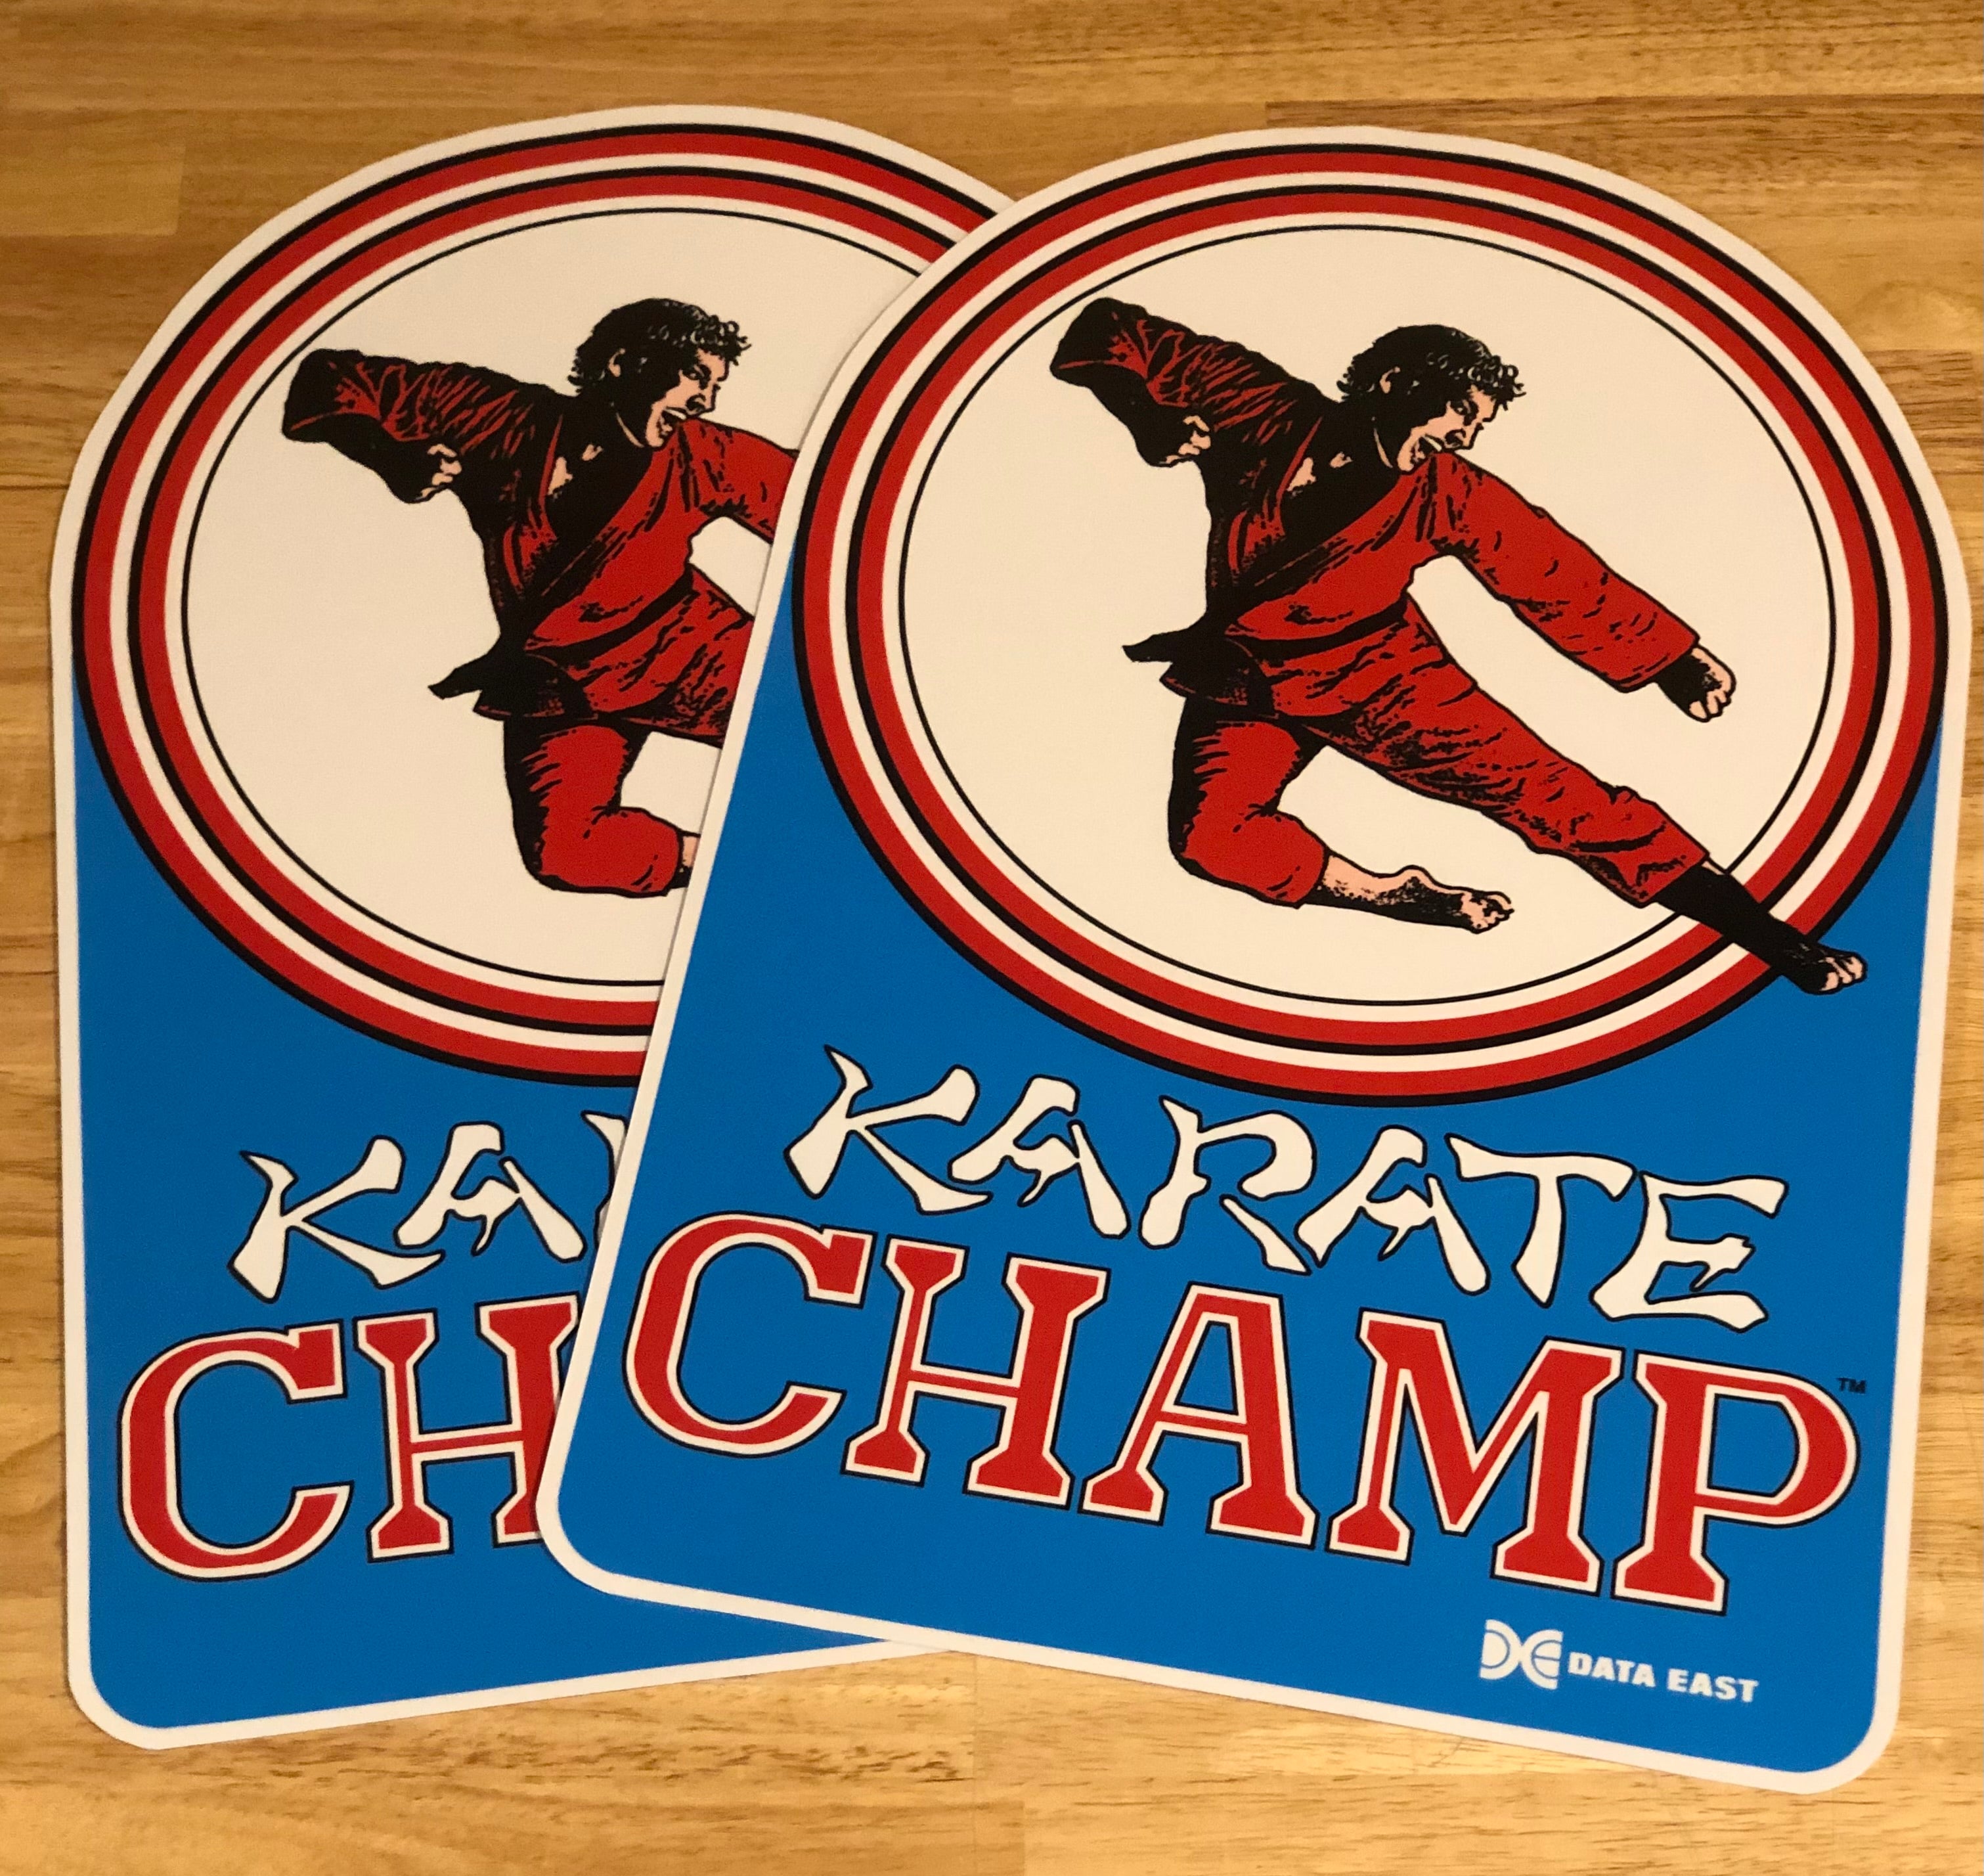 Arte secundario del campeón de karate